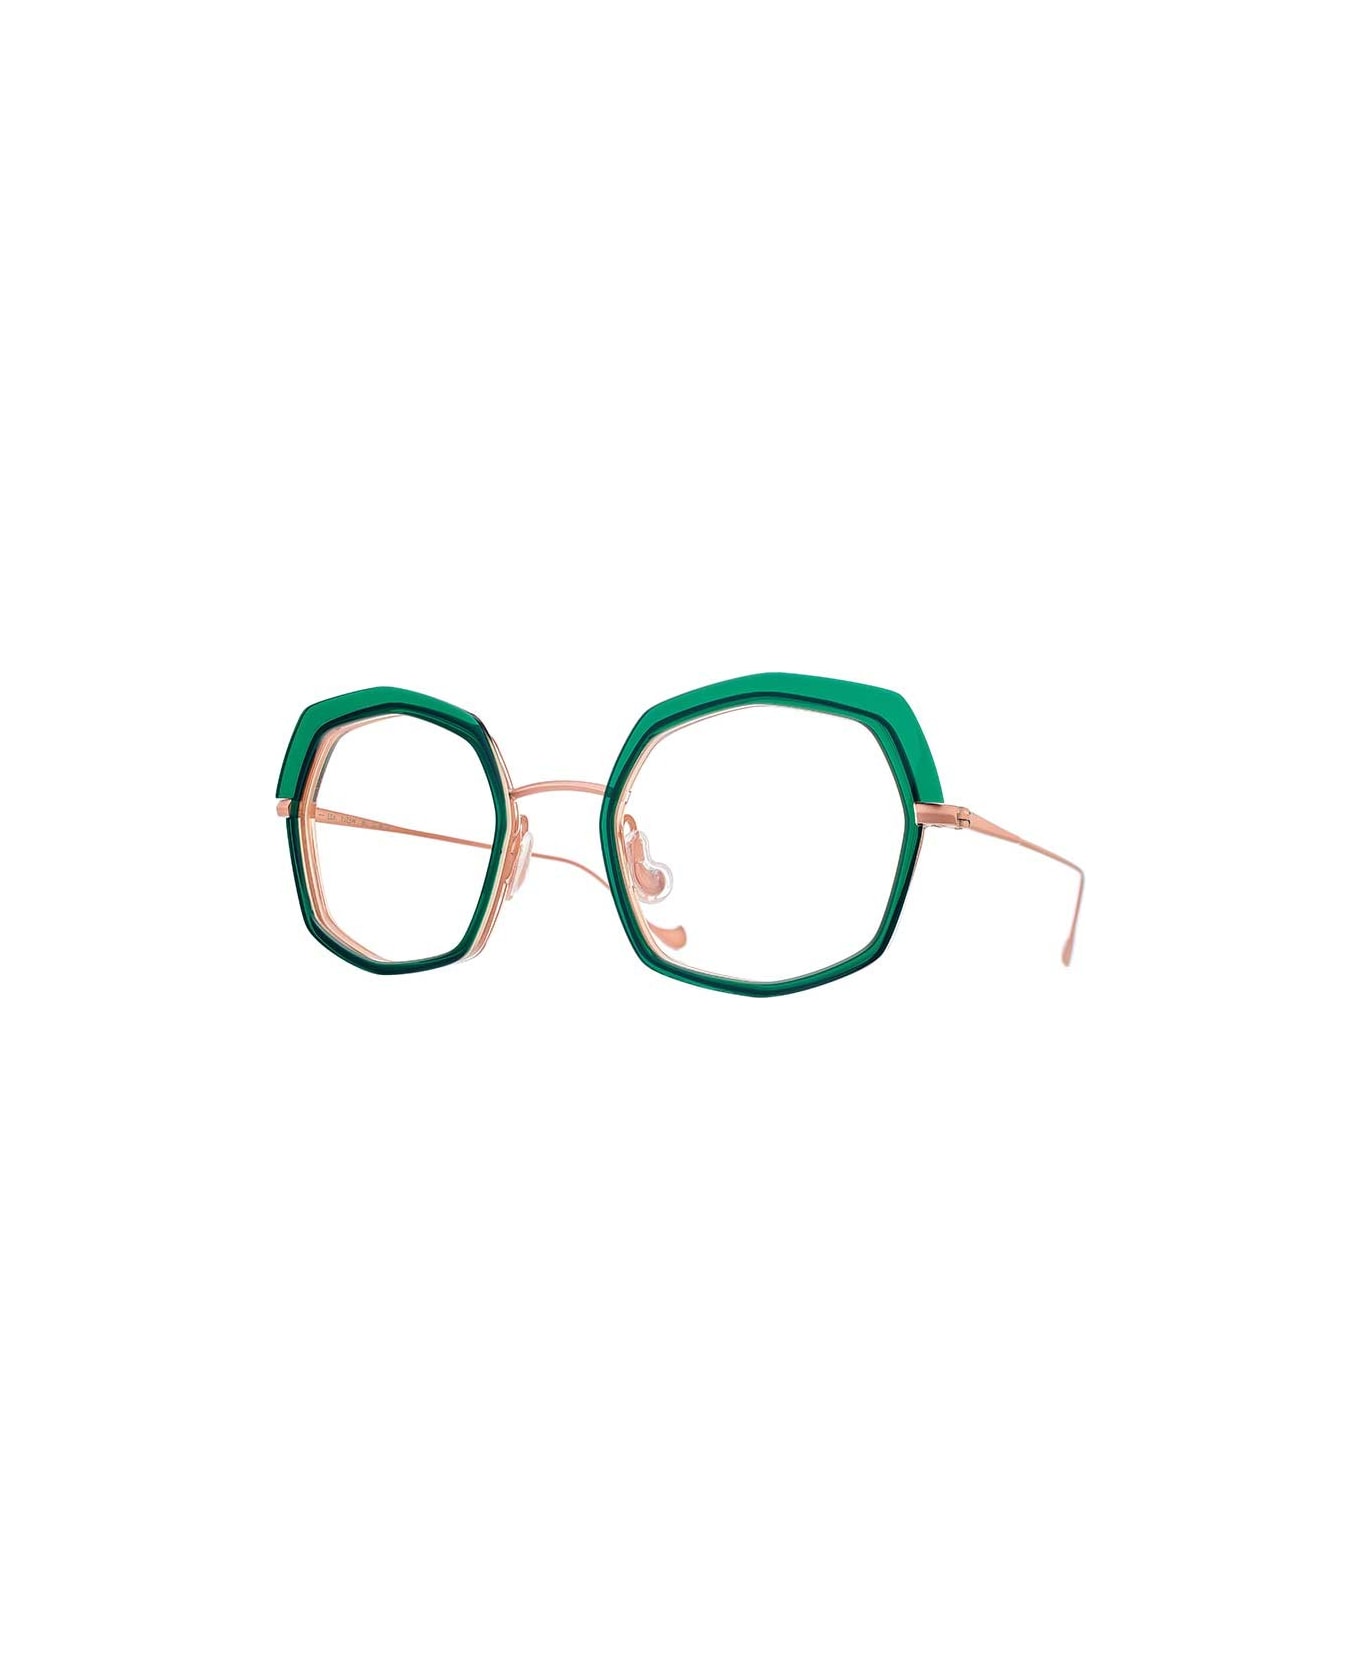 Caroline Abram Eyewear - Verde